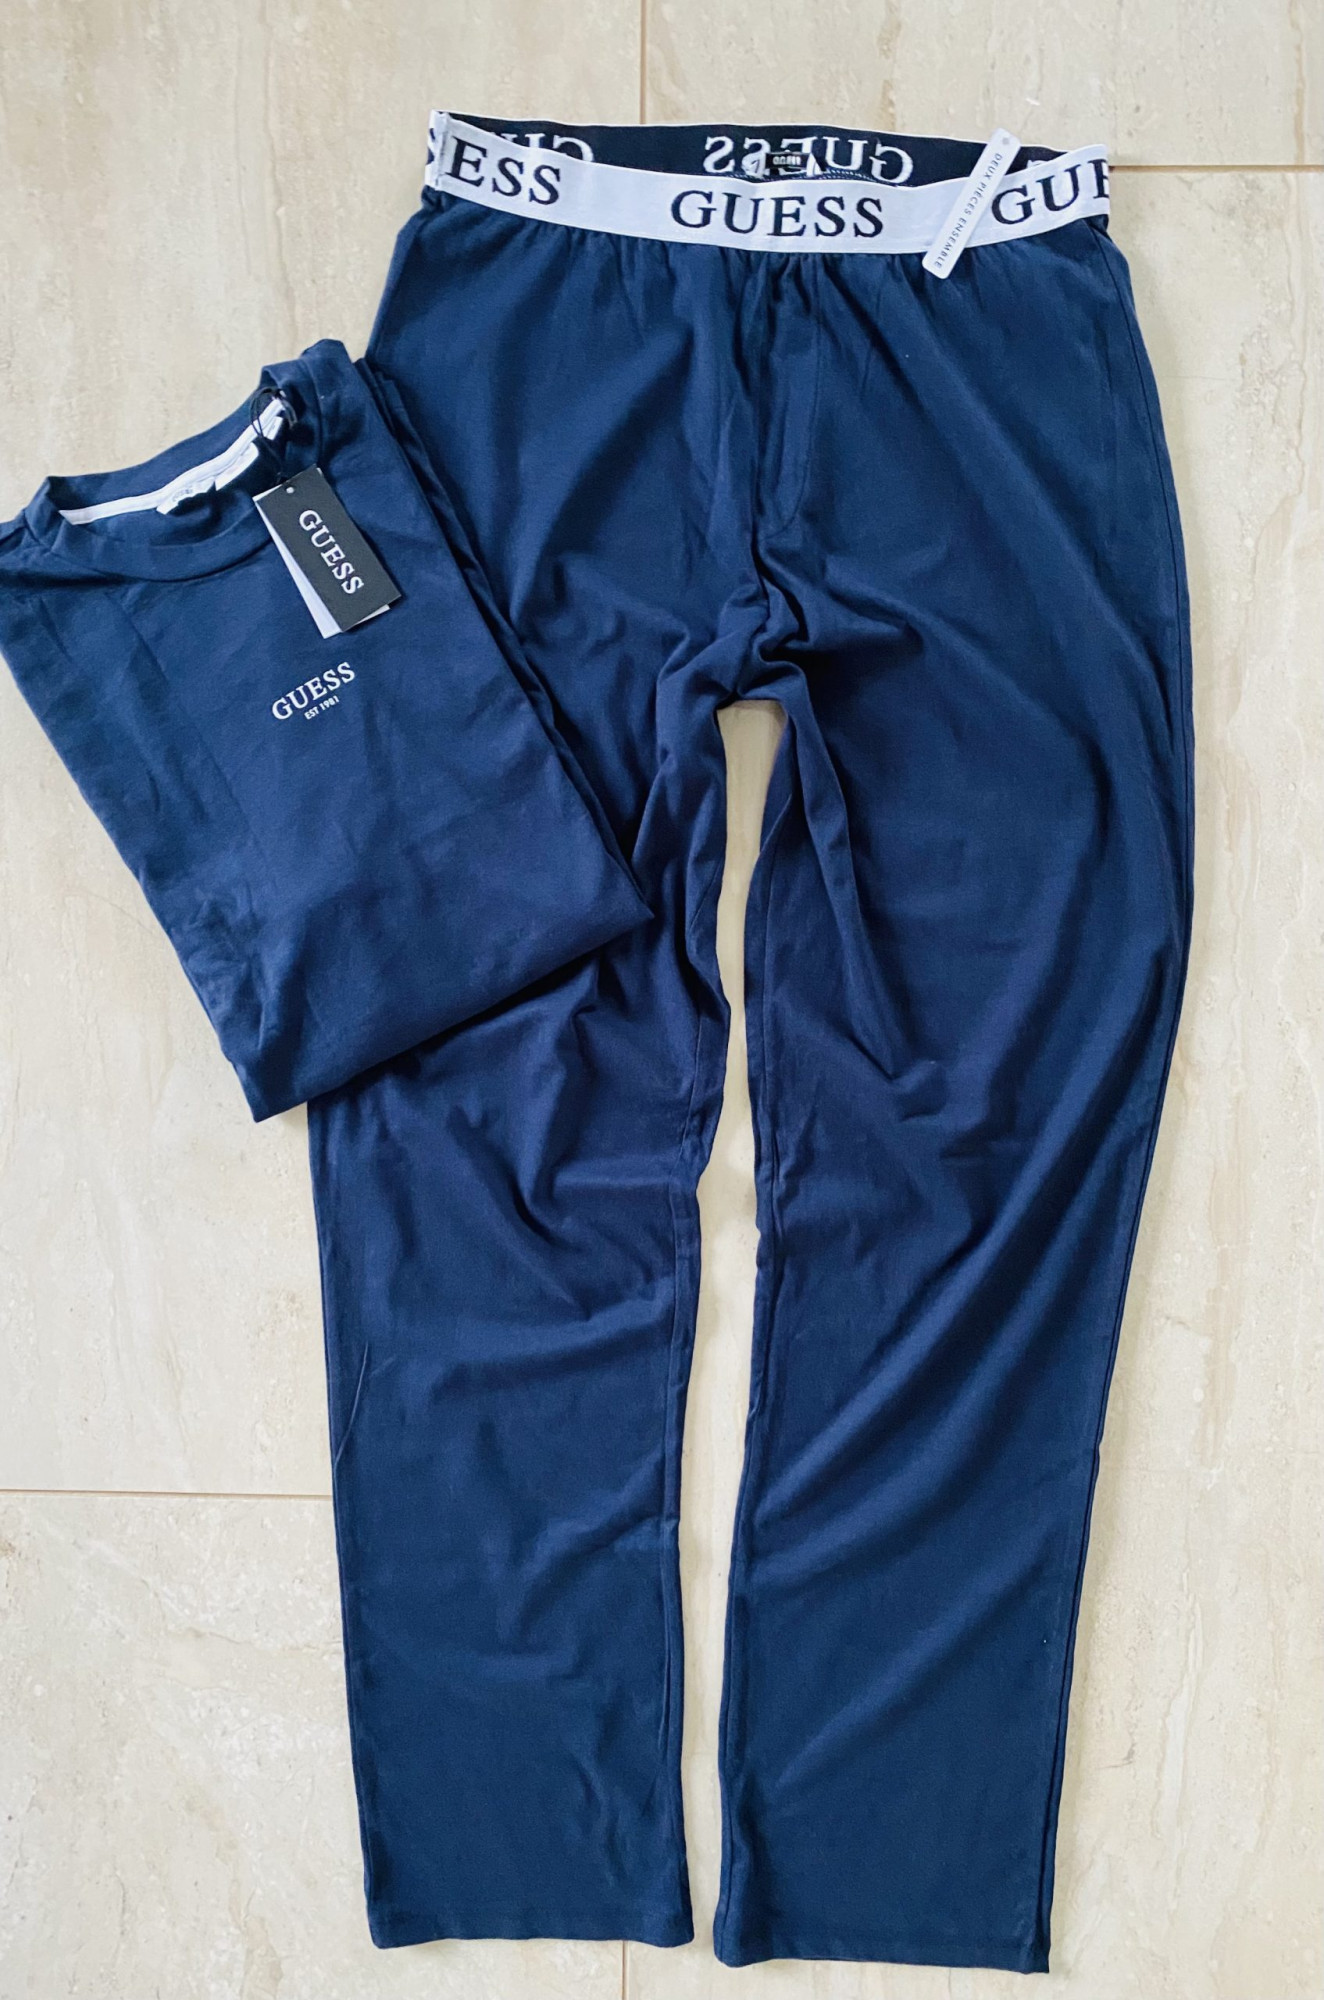 Pánské pyžamo Tmavě modrá modrá M model 16299551 - Guess